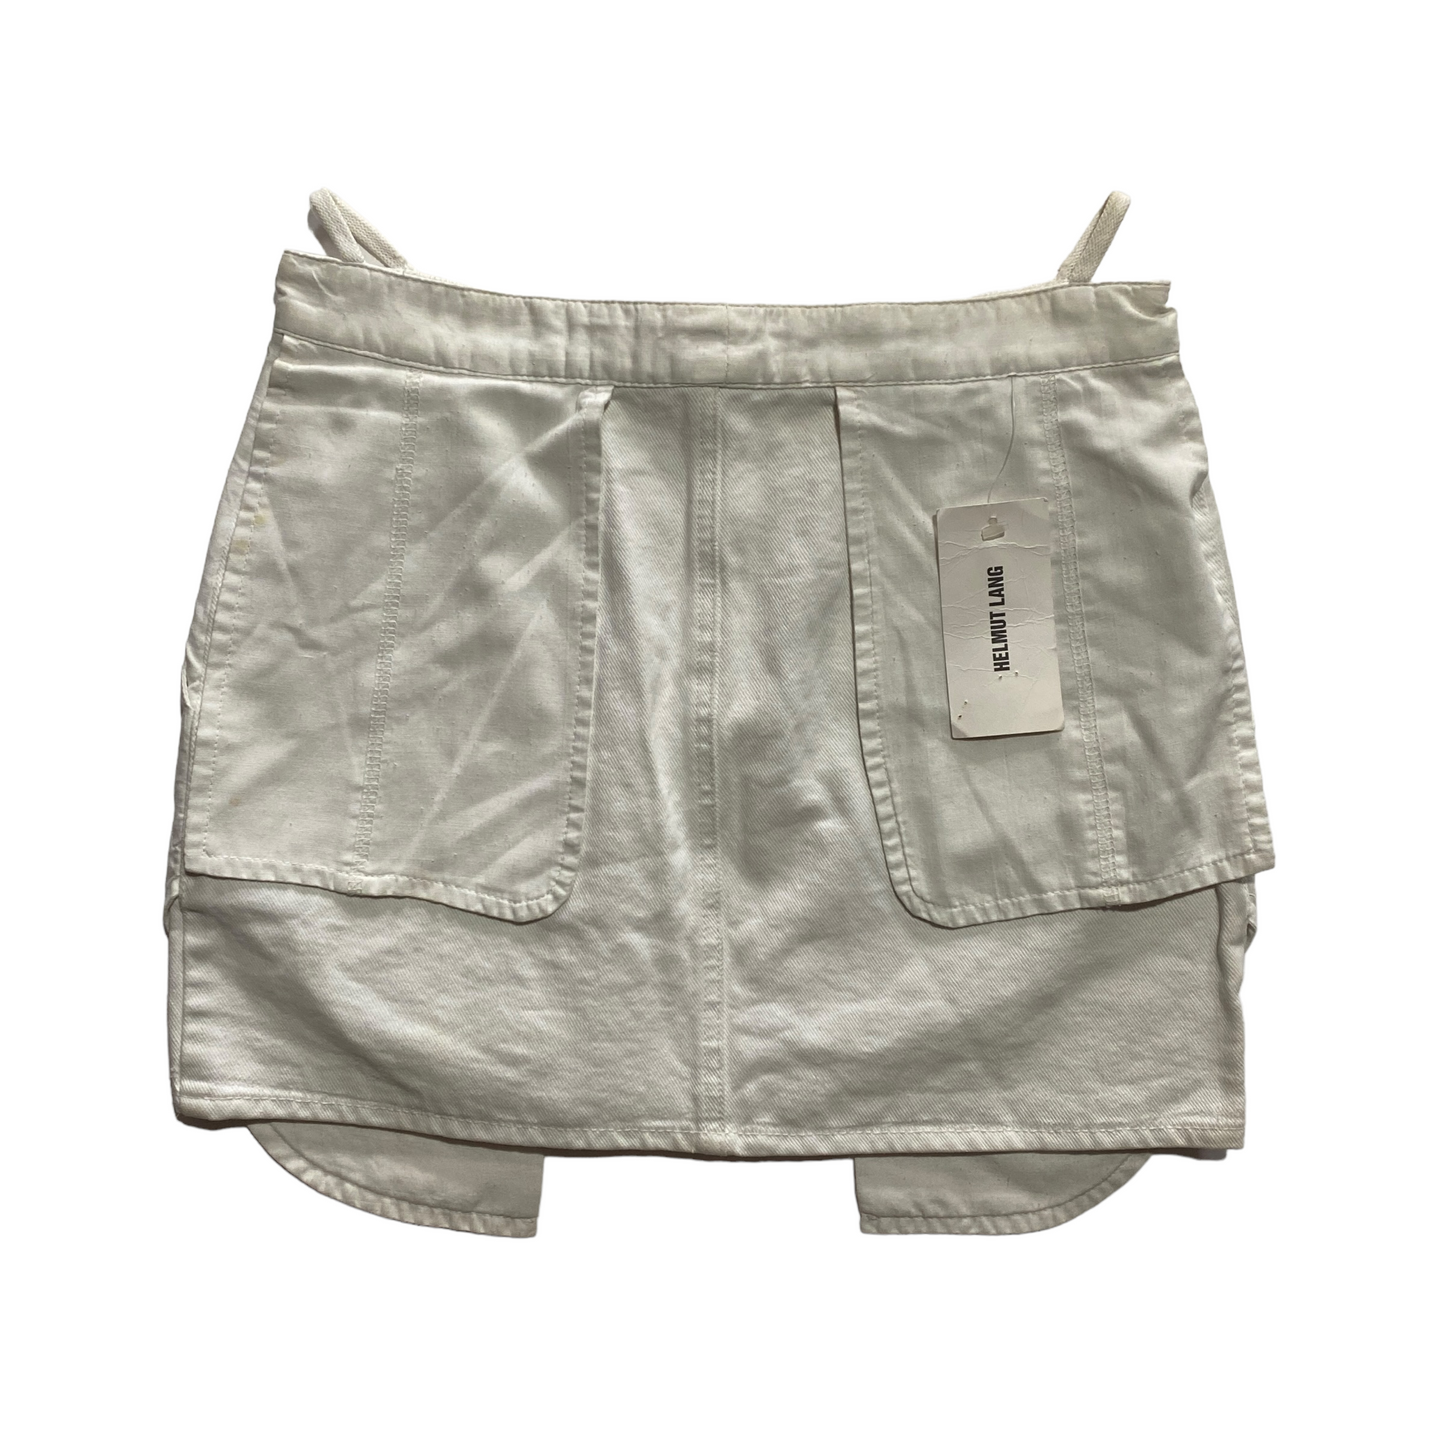 00's Helmut Lang Deadstock Cargo Mini Skirt (36W)